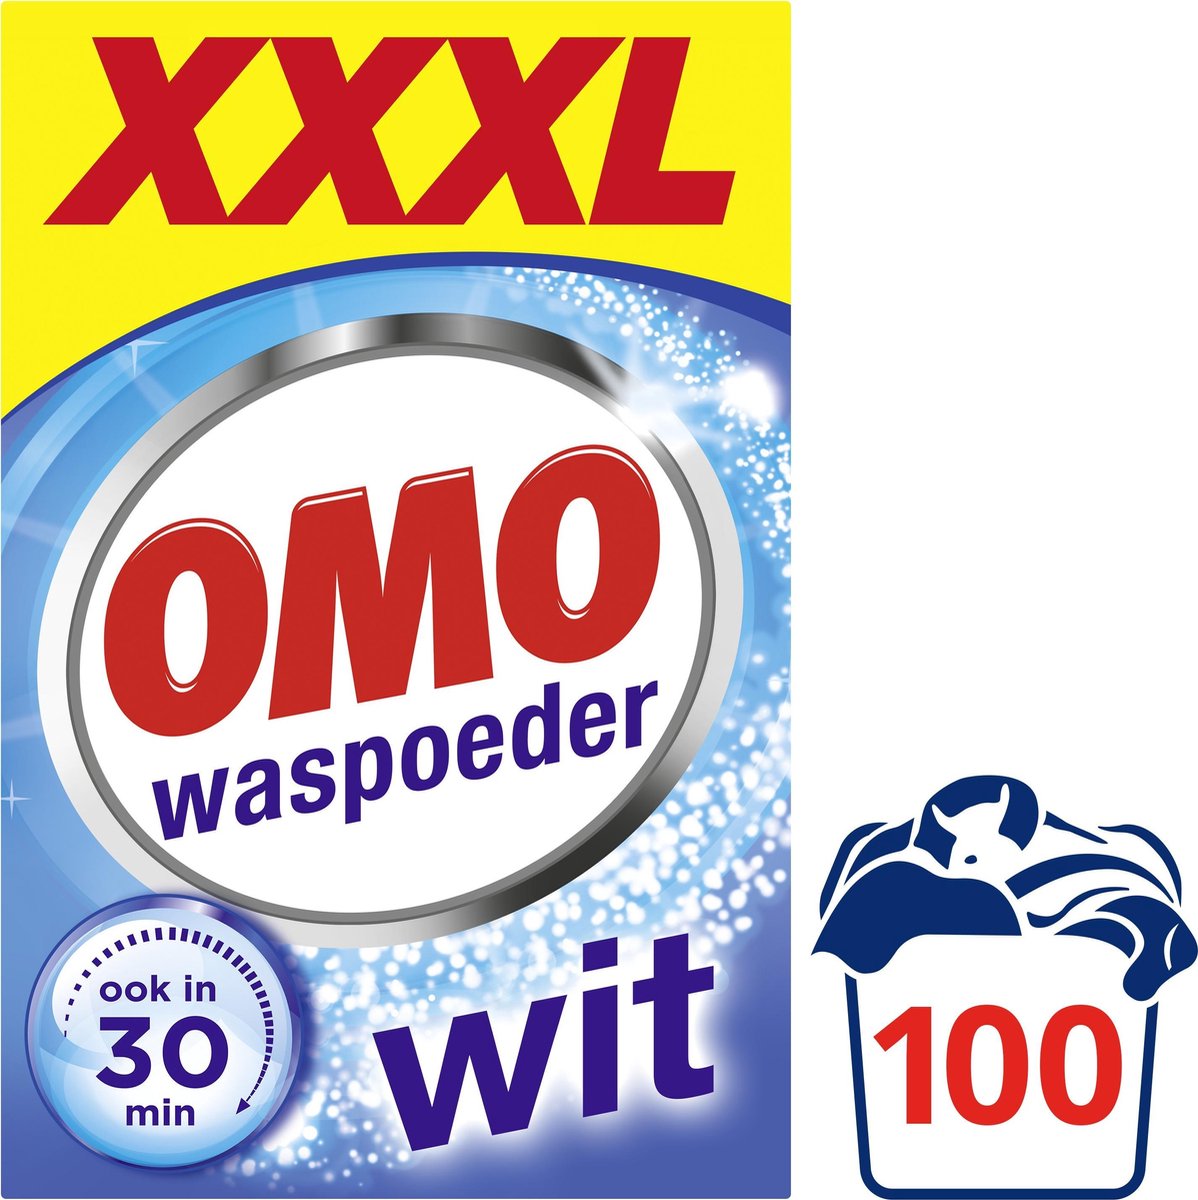 Omo Wit Krachtig Waspoeder- 100 wasbeurten - XXXL Voordeelpakking